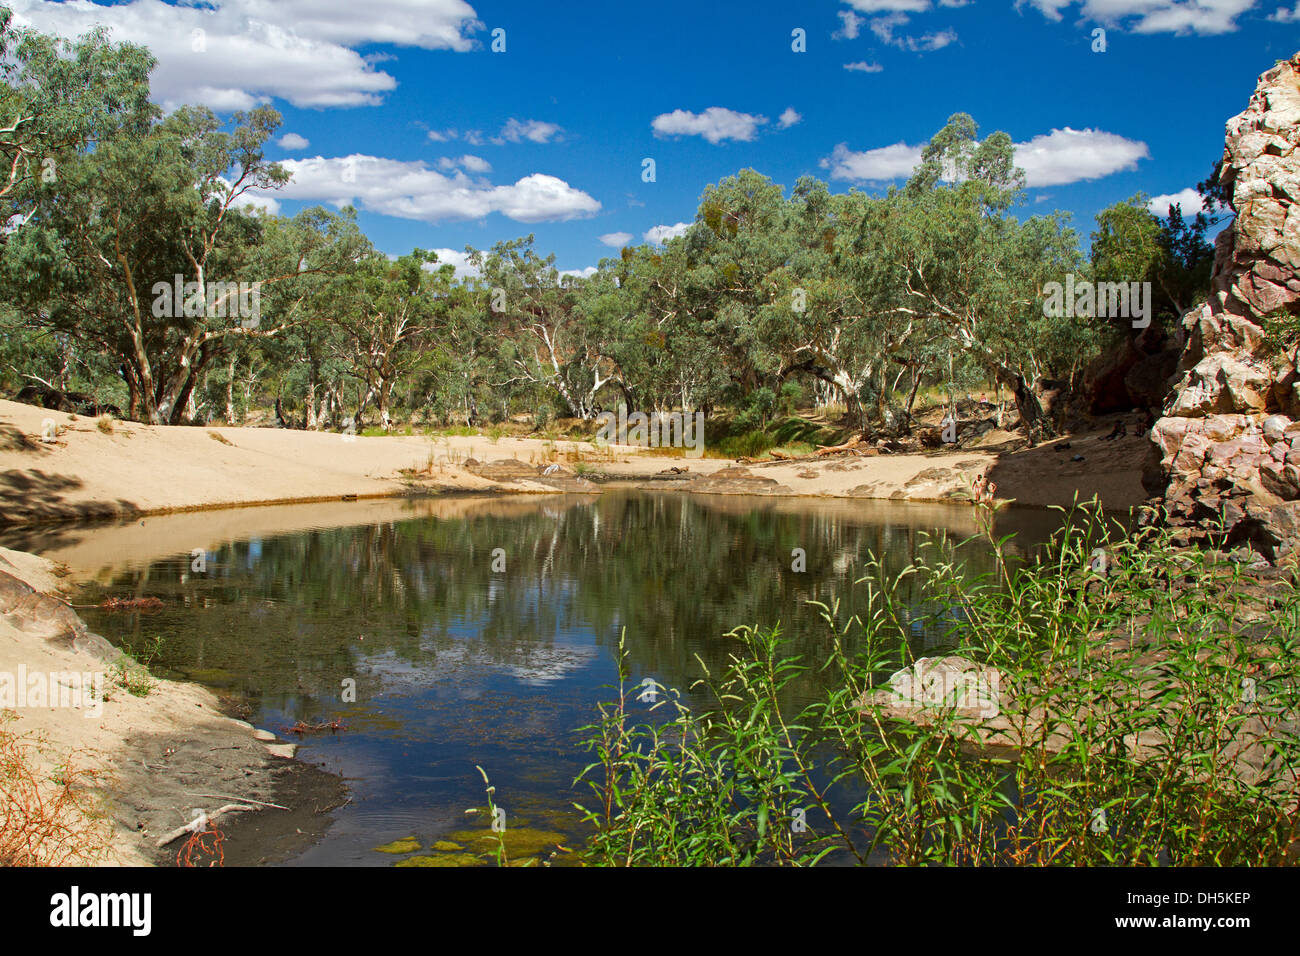 Malerischen Outback-Landschaft / blue Pool von Wasser und Oase in Ormiston Gorge in West MacDonnell Ranges in der Nähe von Alice Springs NT Stockfoto